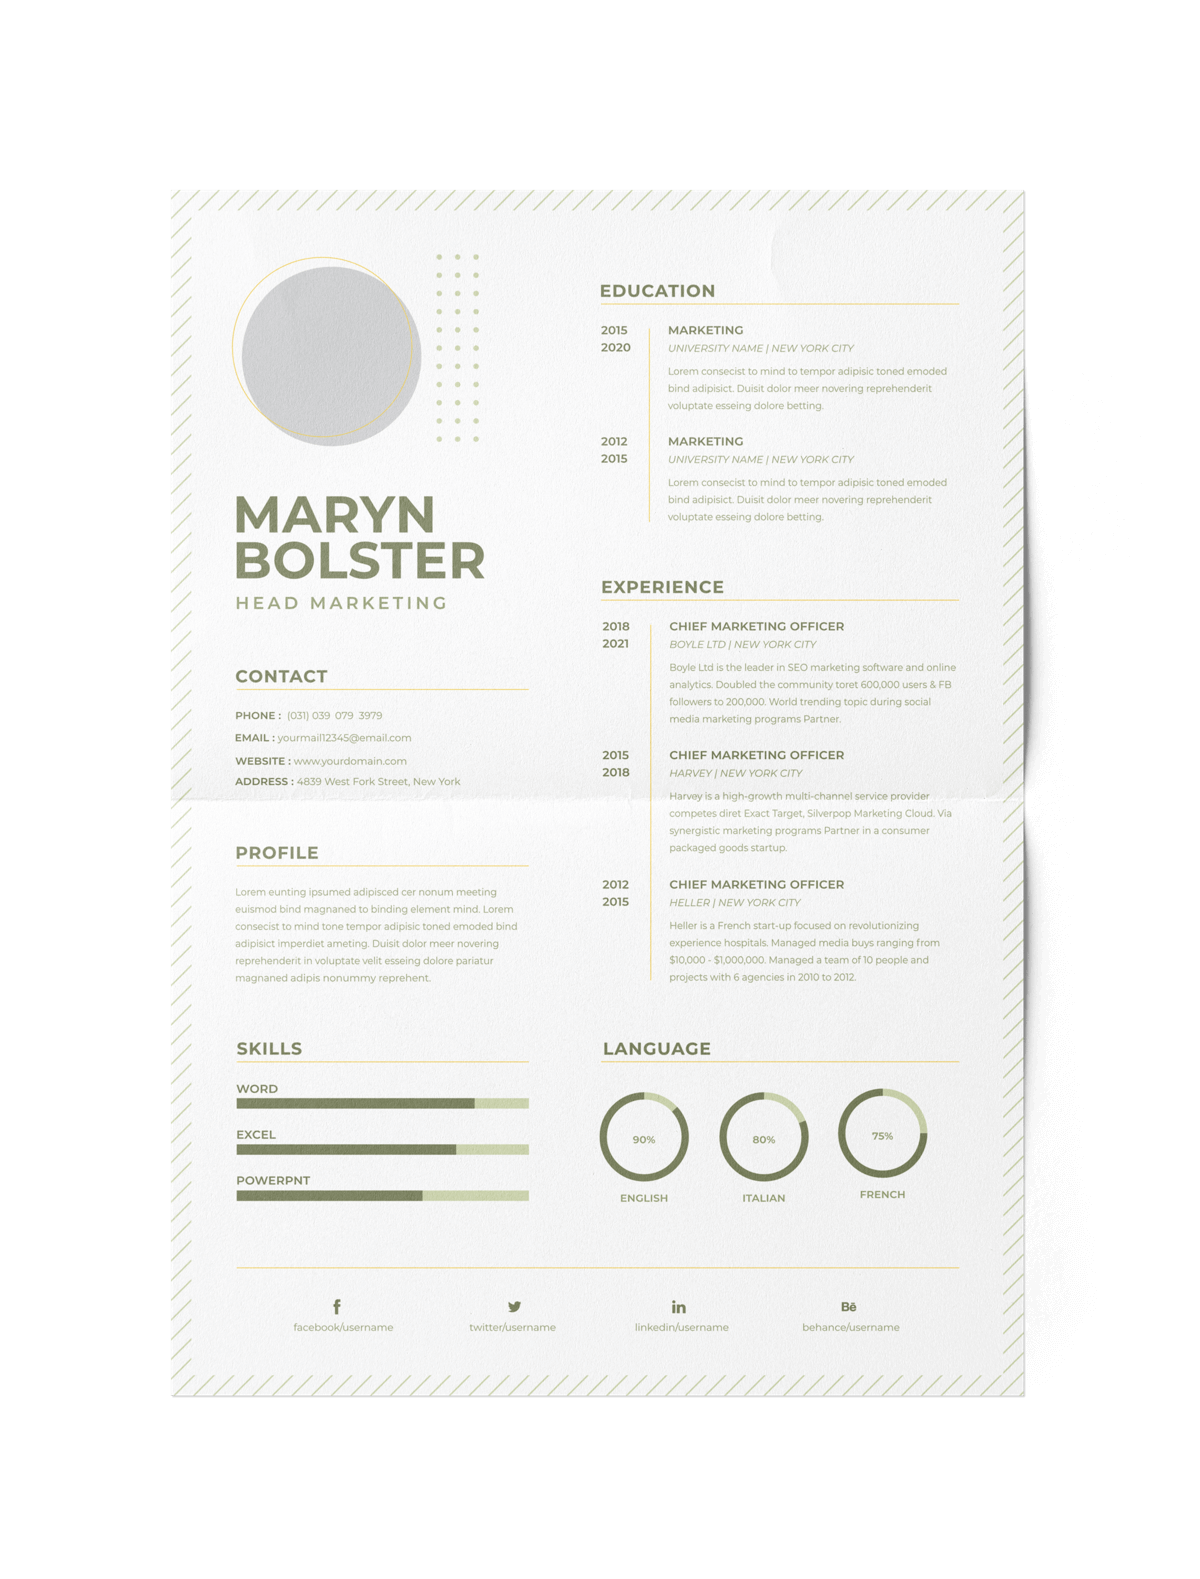 CV #104 Maryn Bolster